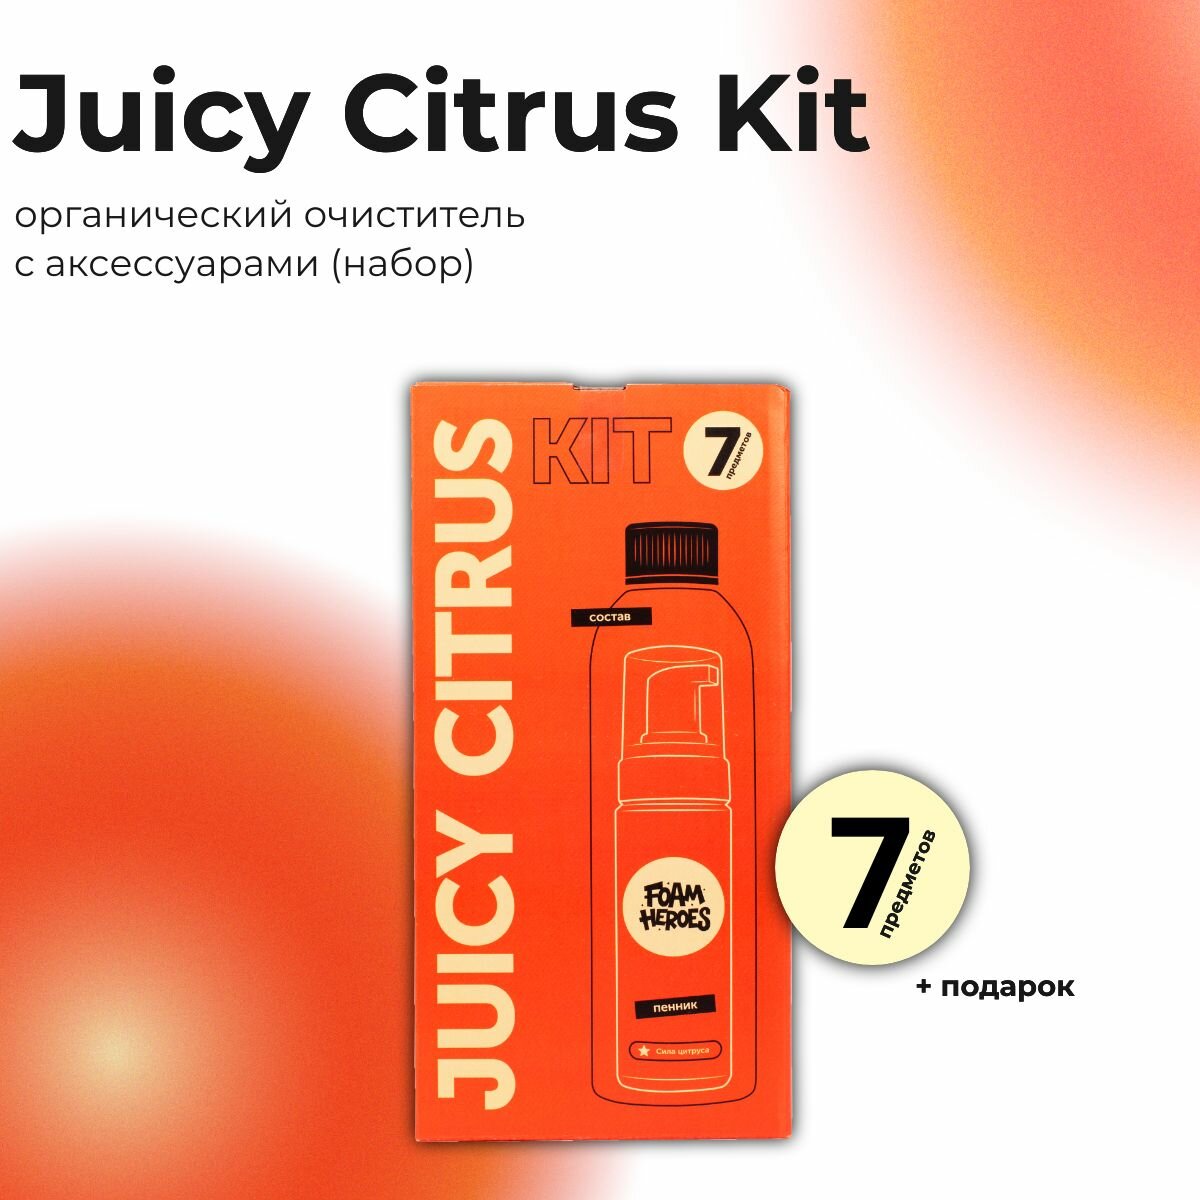 Foam Heroes универсальный очиститель c аксессуарами Juicy Citrus Kit (набор)